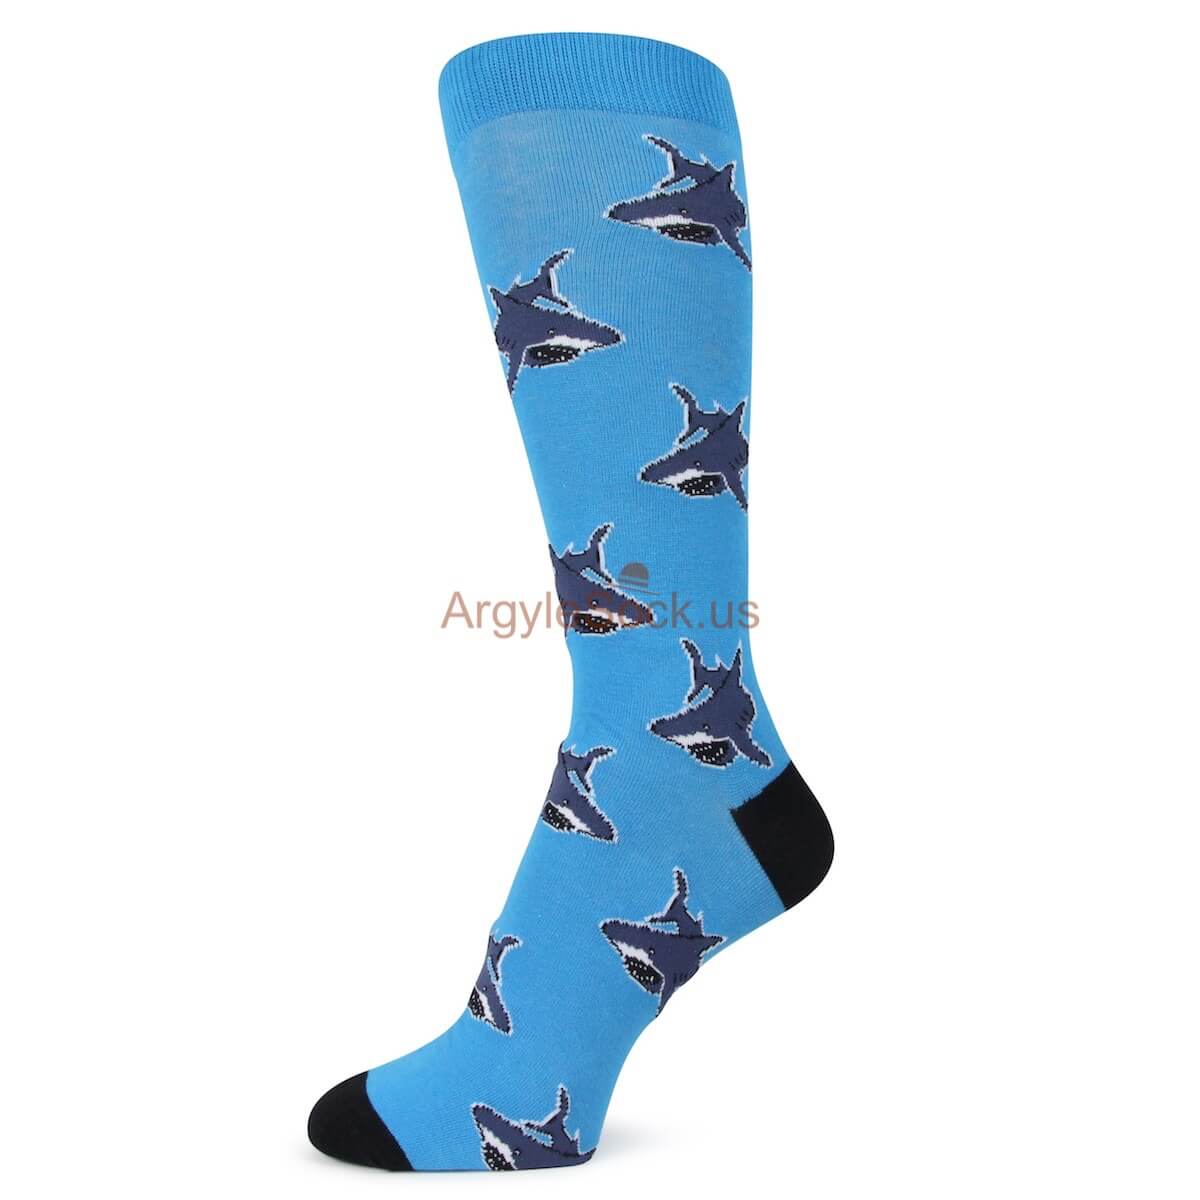 Great White Shark Themed Socks for Men